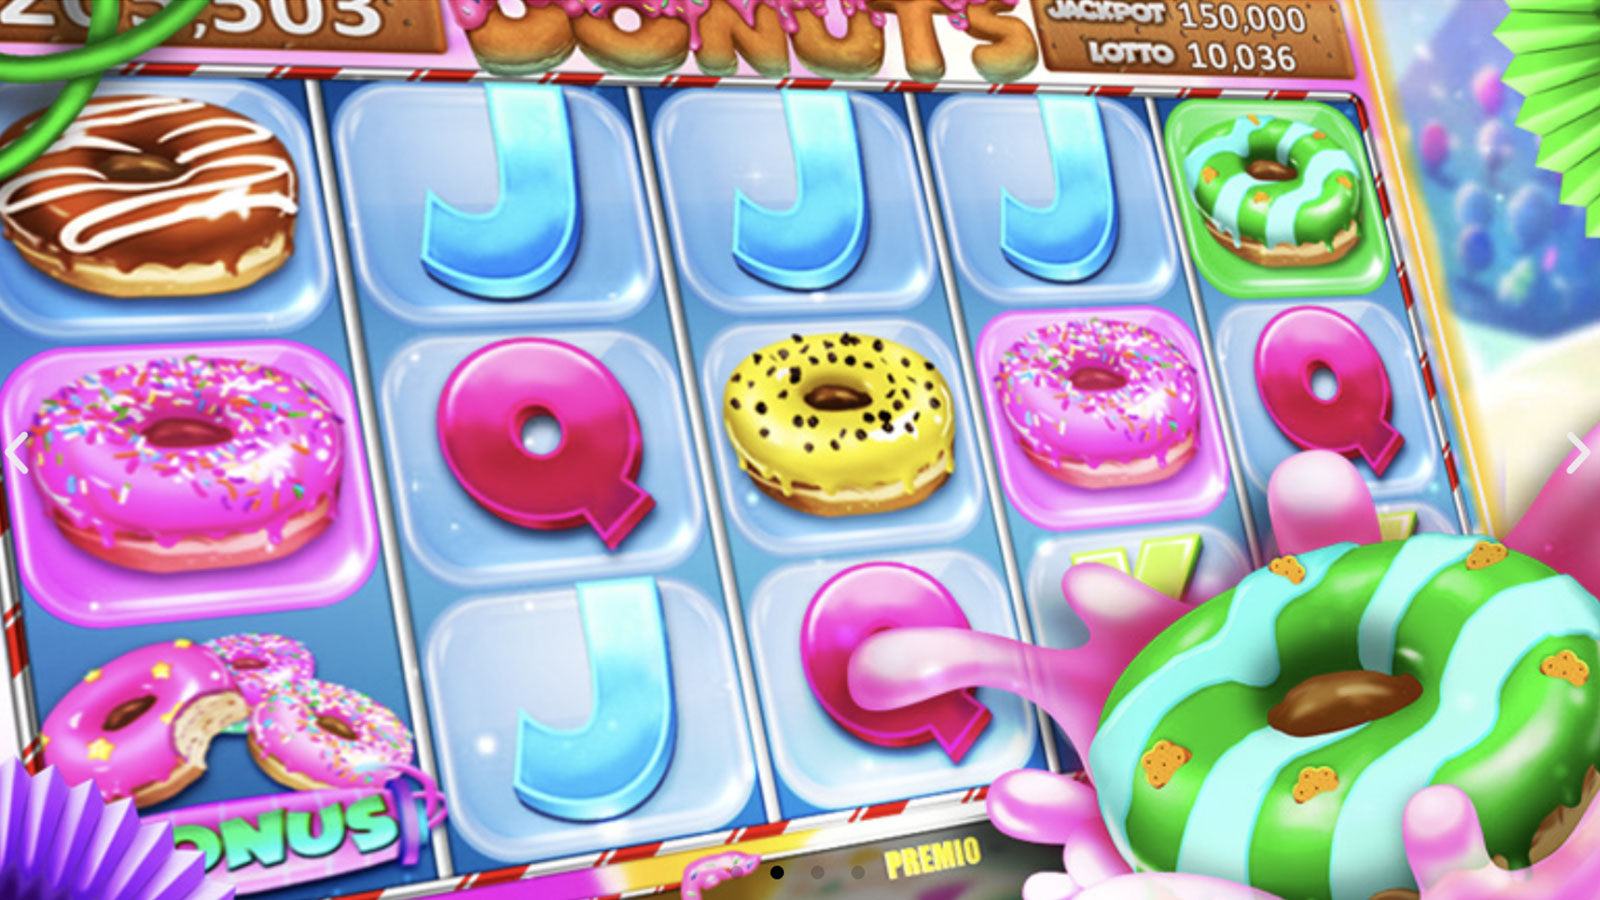 juegos-orion-arriendo-donuts-3.jpg